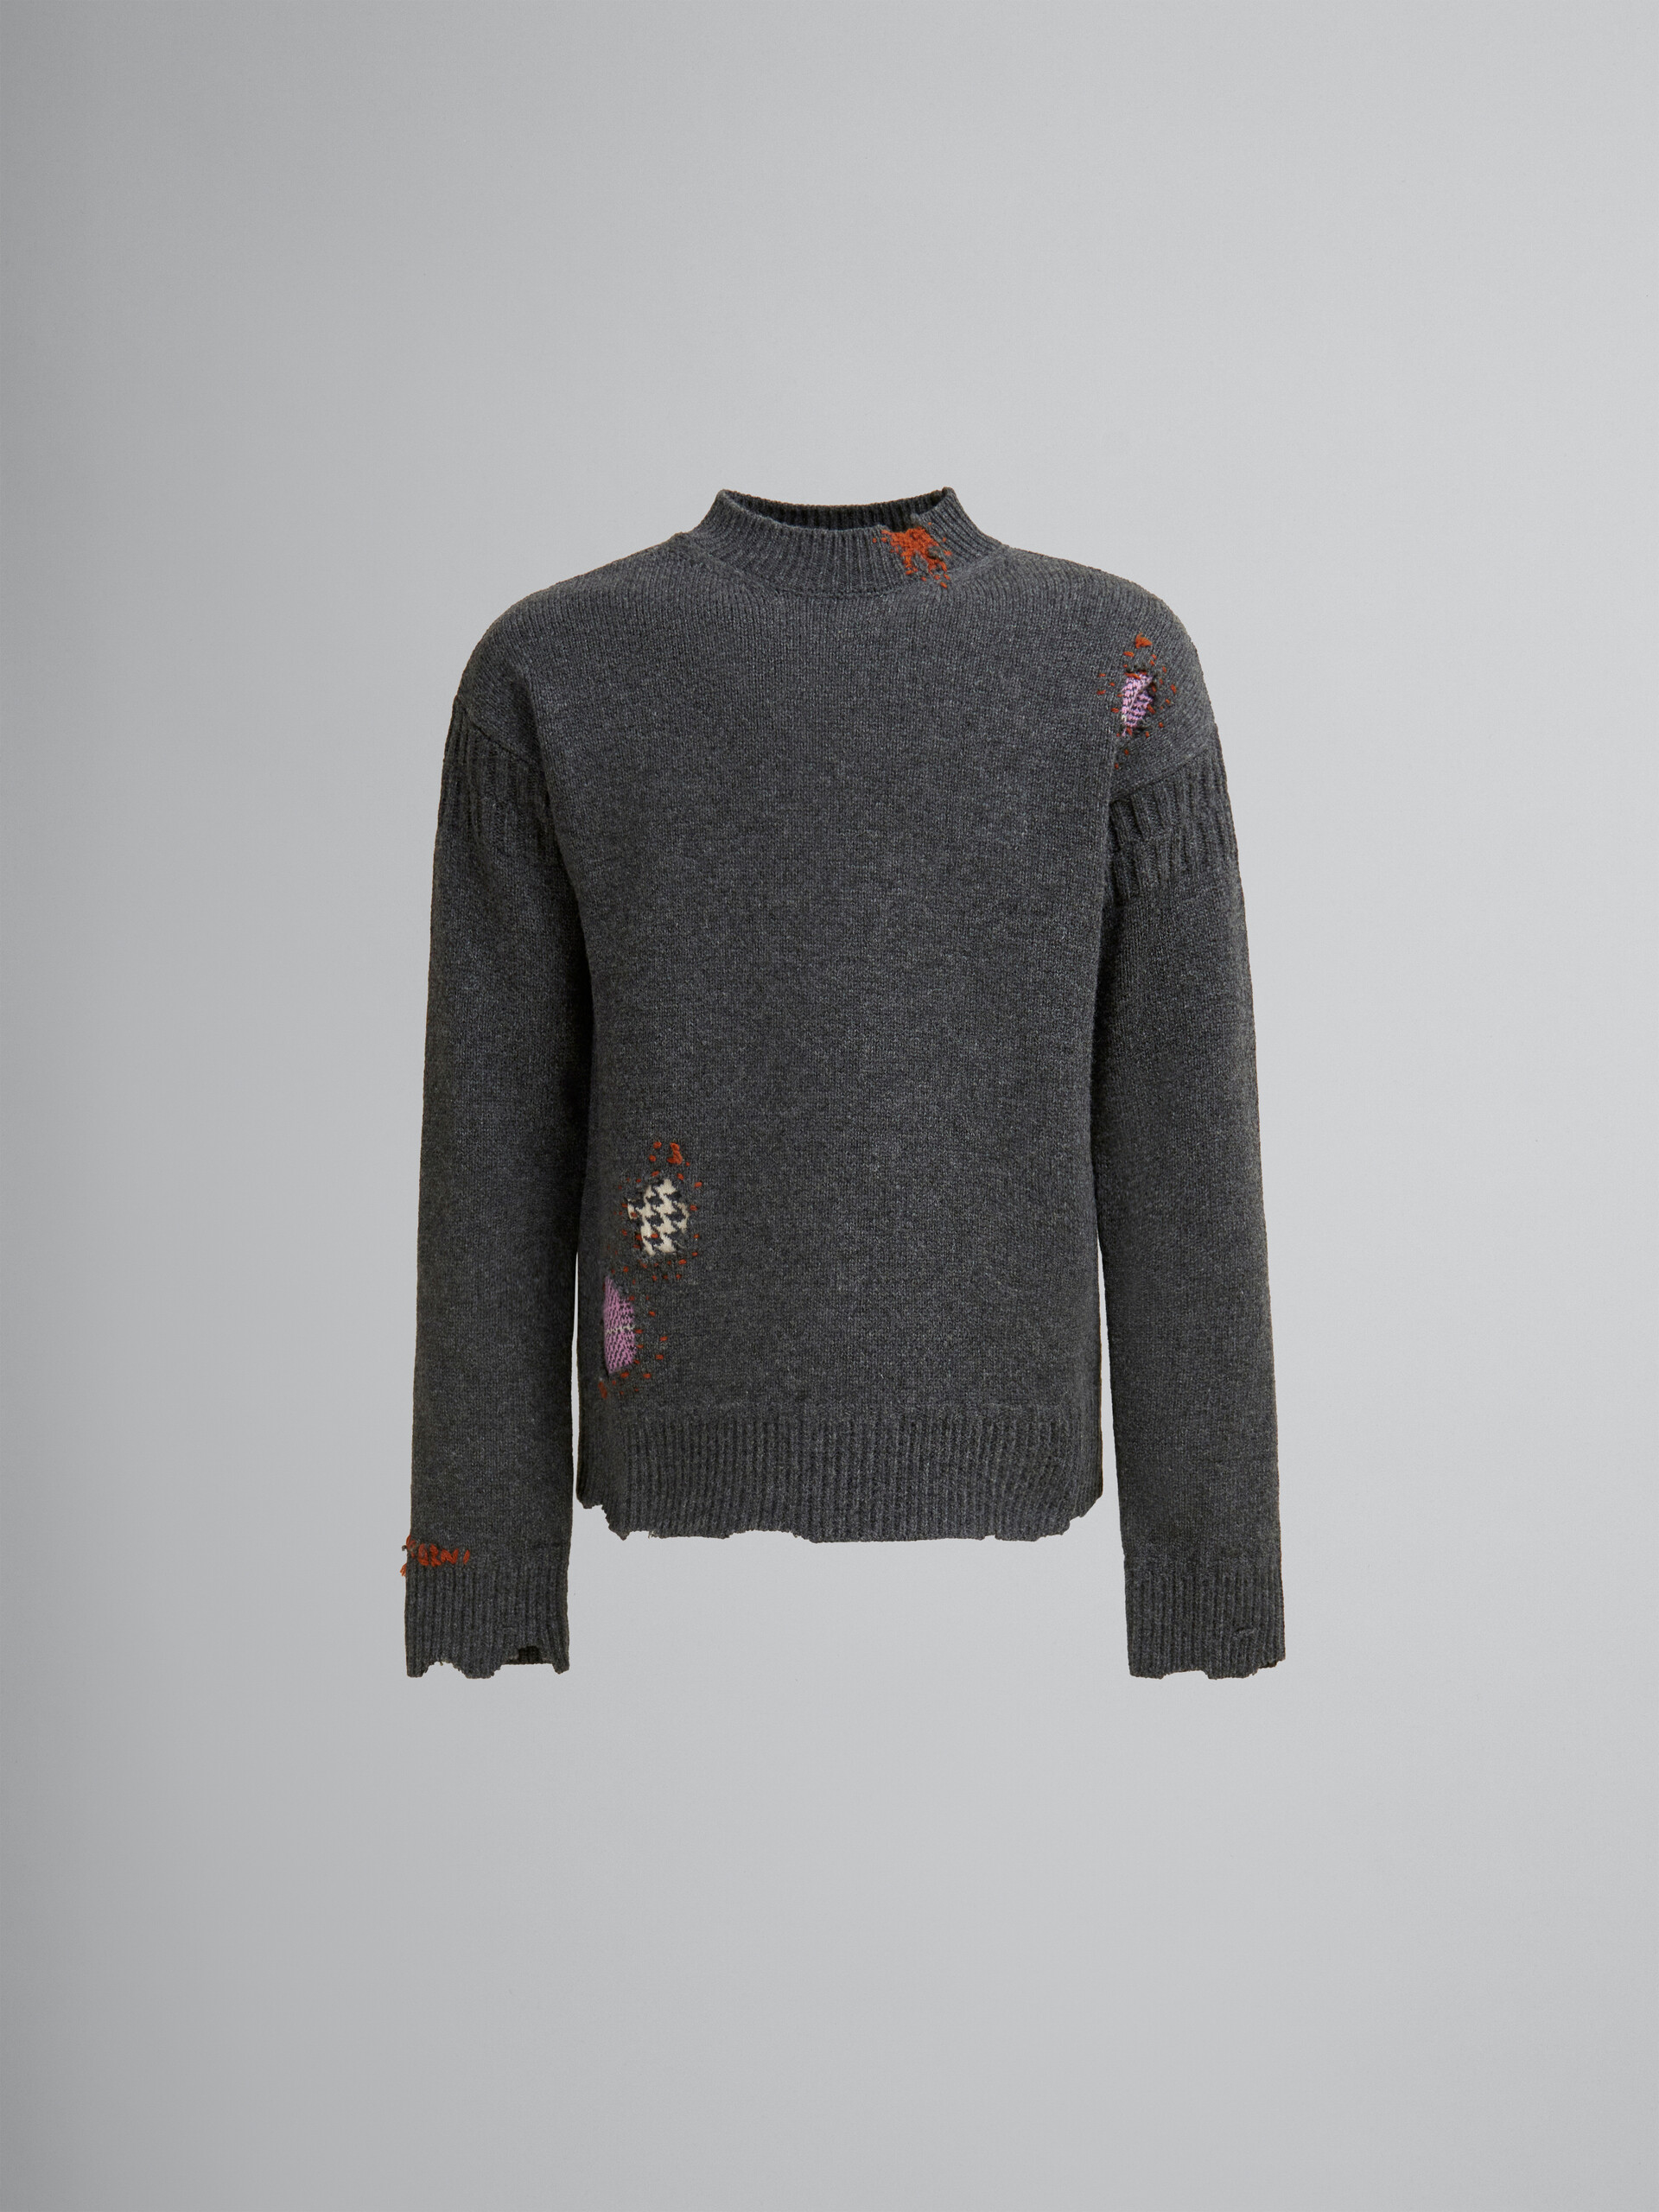 Jersey gris de lana Shetland con parches efecto remiendo Marni - jerseys - Image 1